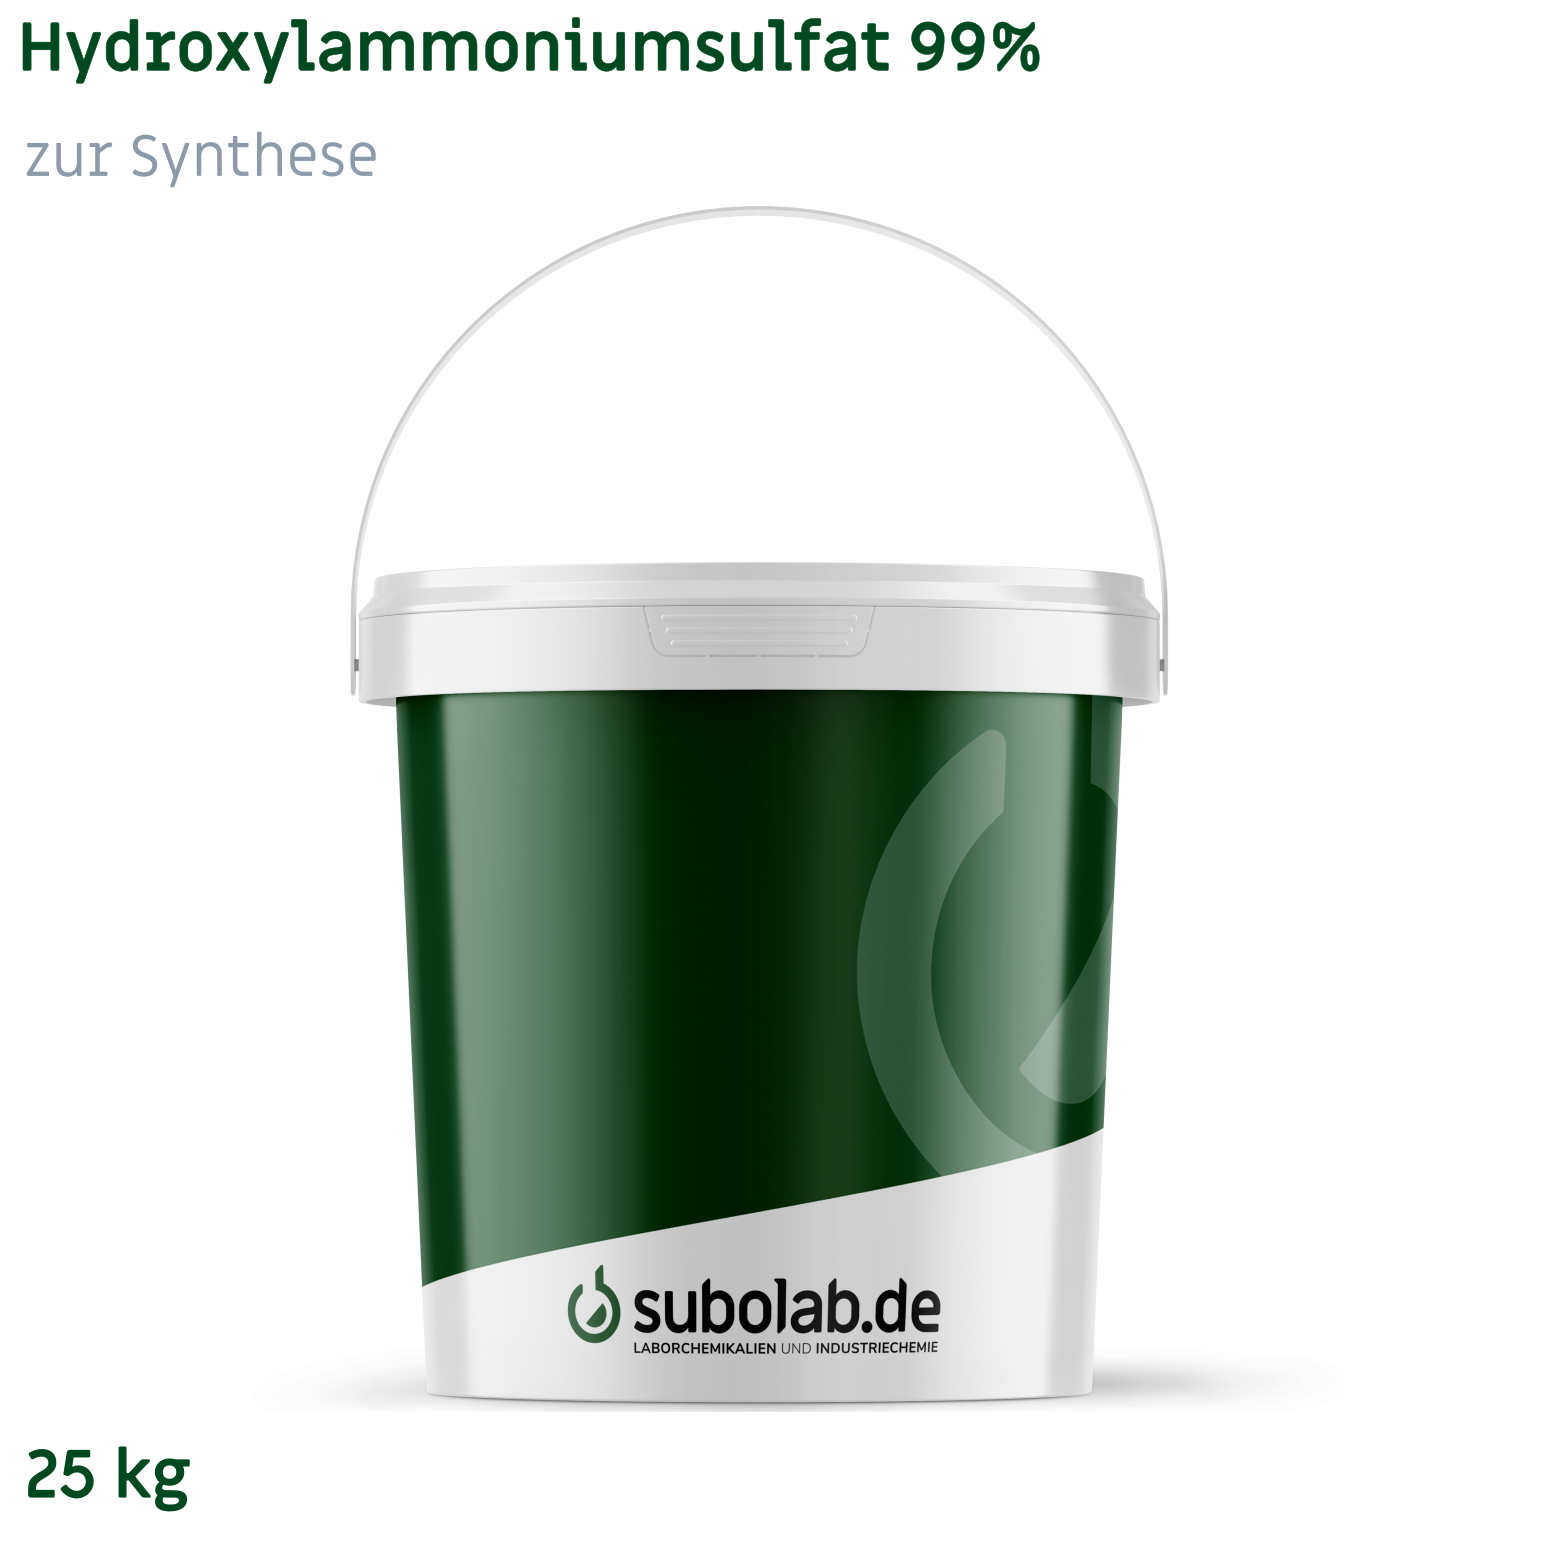 Bild von Hydroxylammoniumsulfat 99% zur Synthese (25 kg)